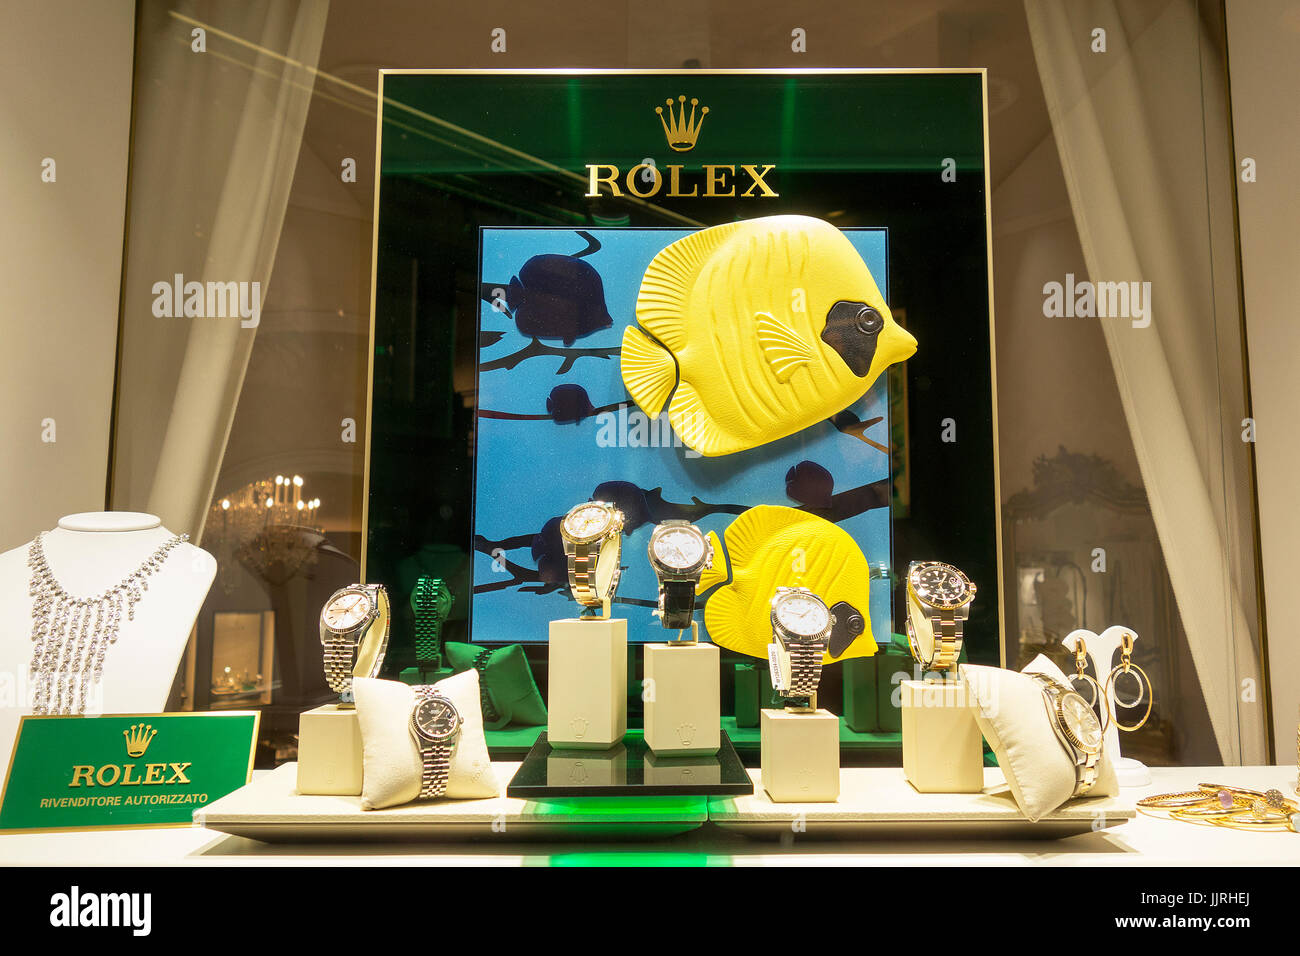 Rolex-Uhren auf dem Display in einem Schaufenster Stockfoto